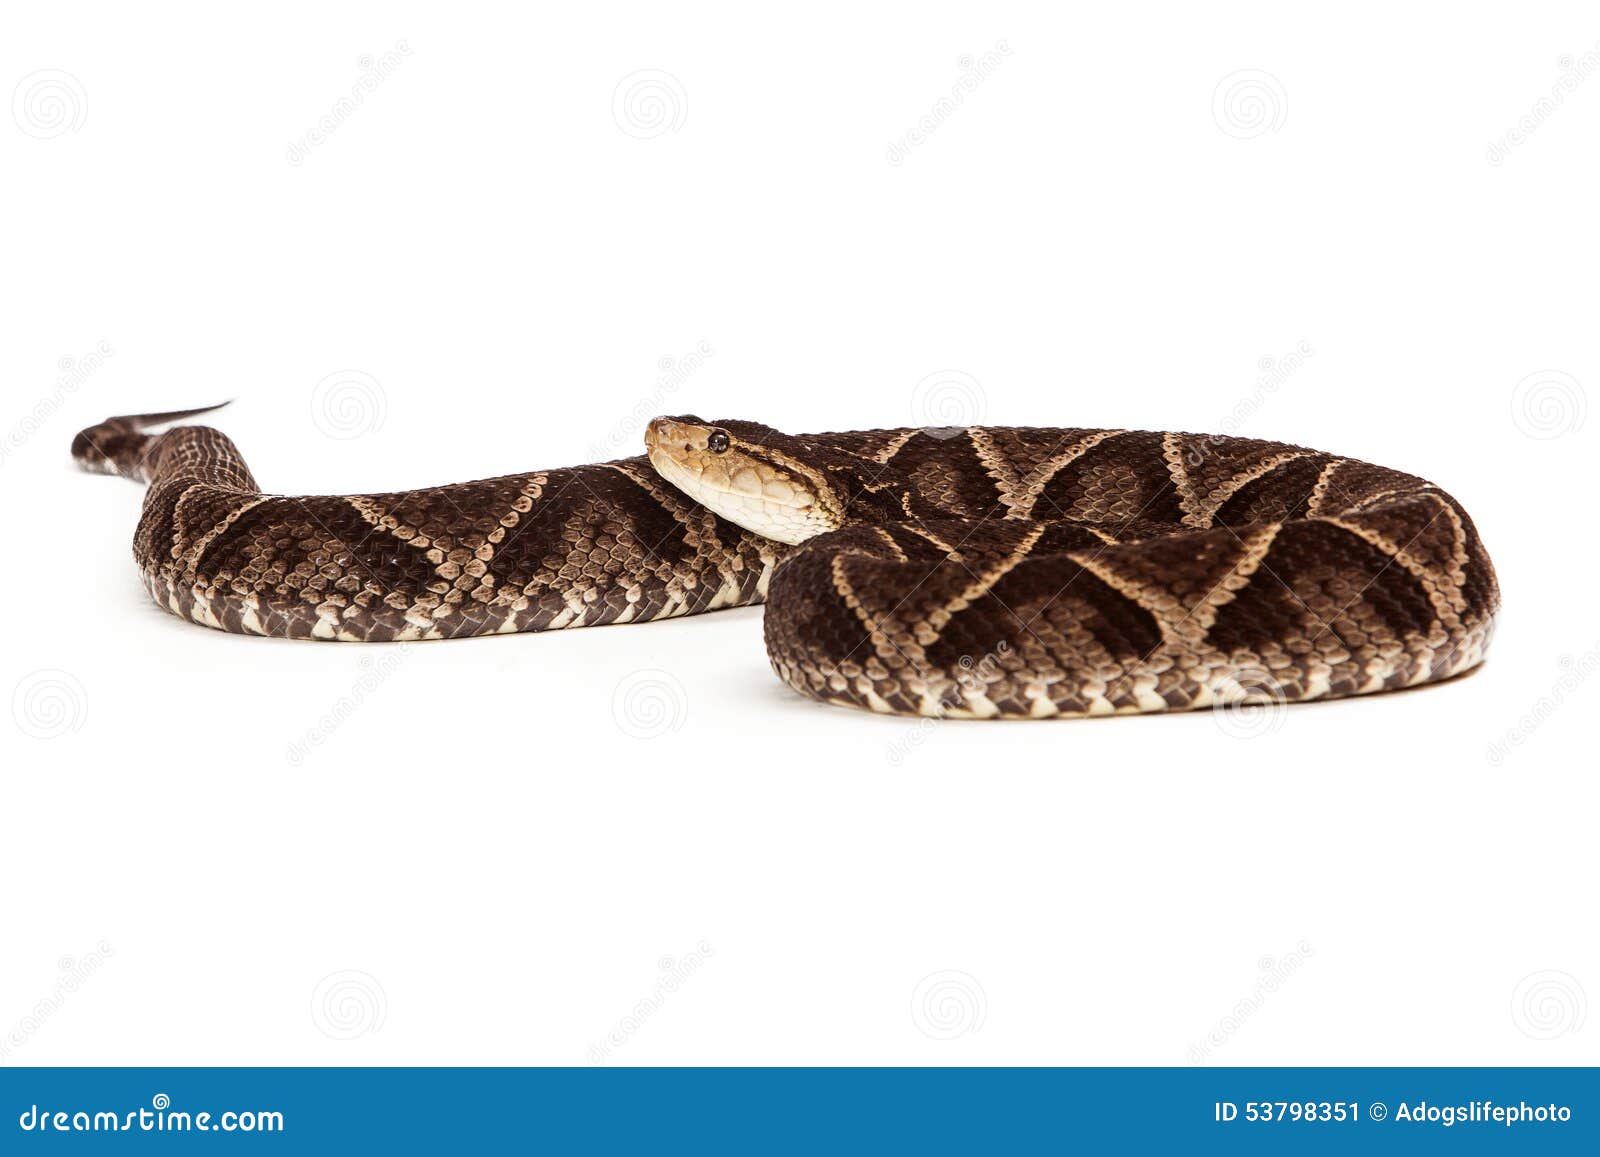 dangerous terciopelo pit viper snake